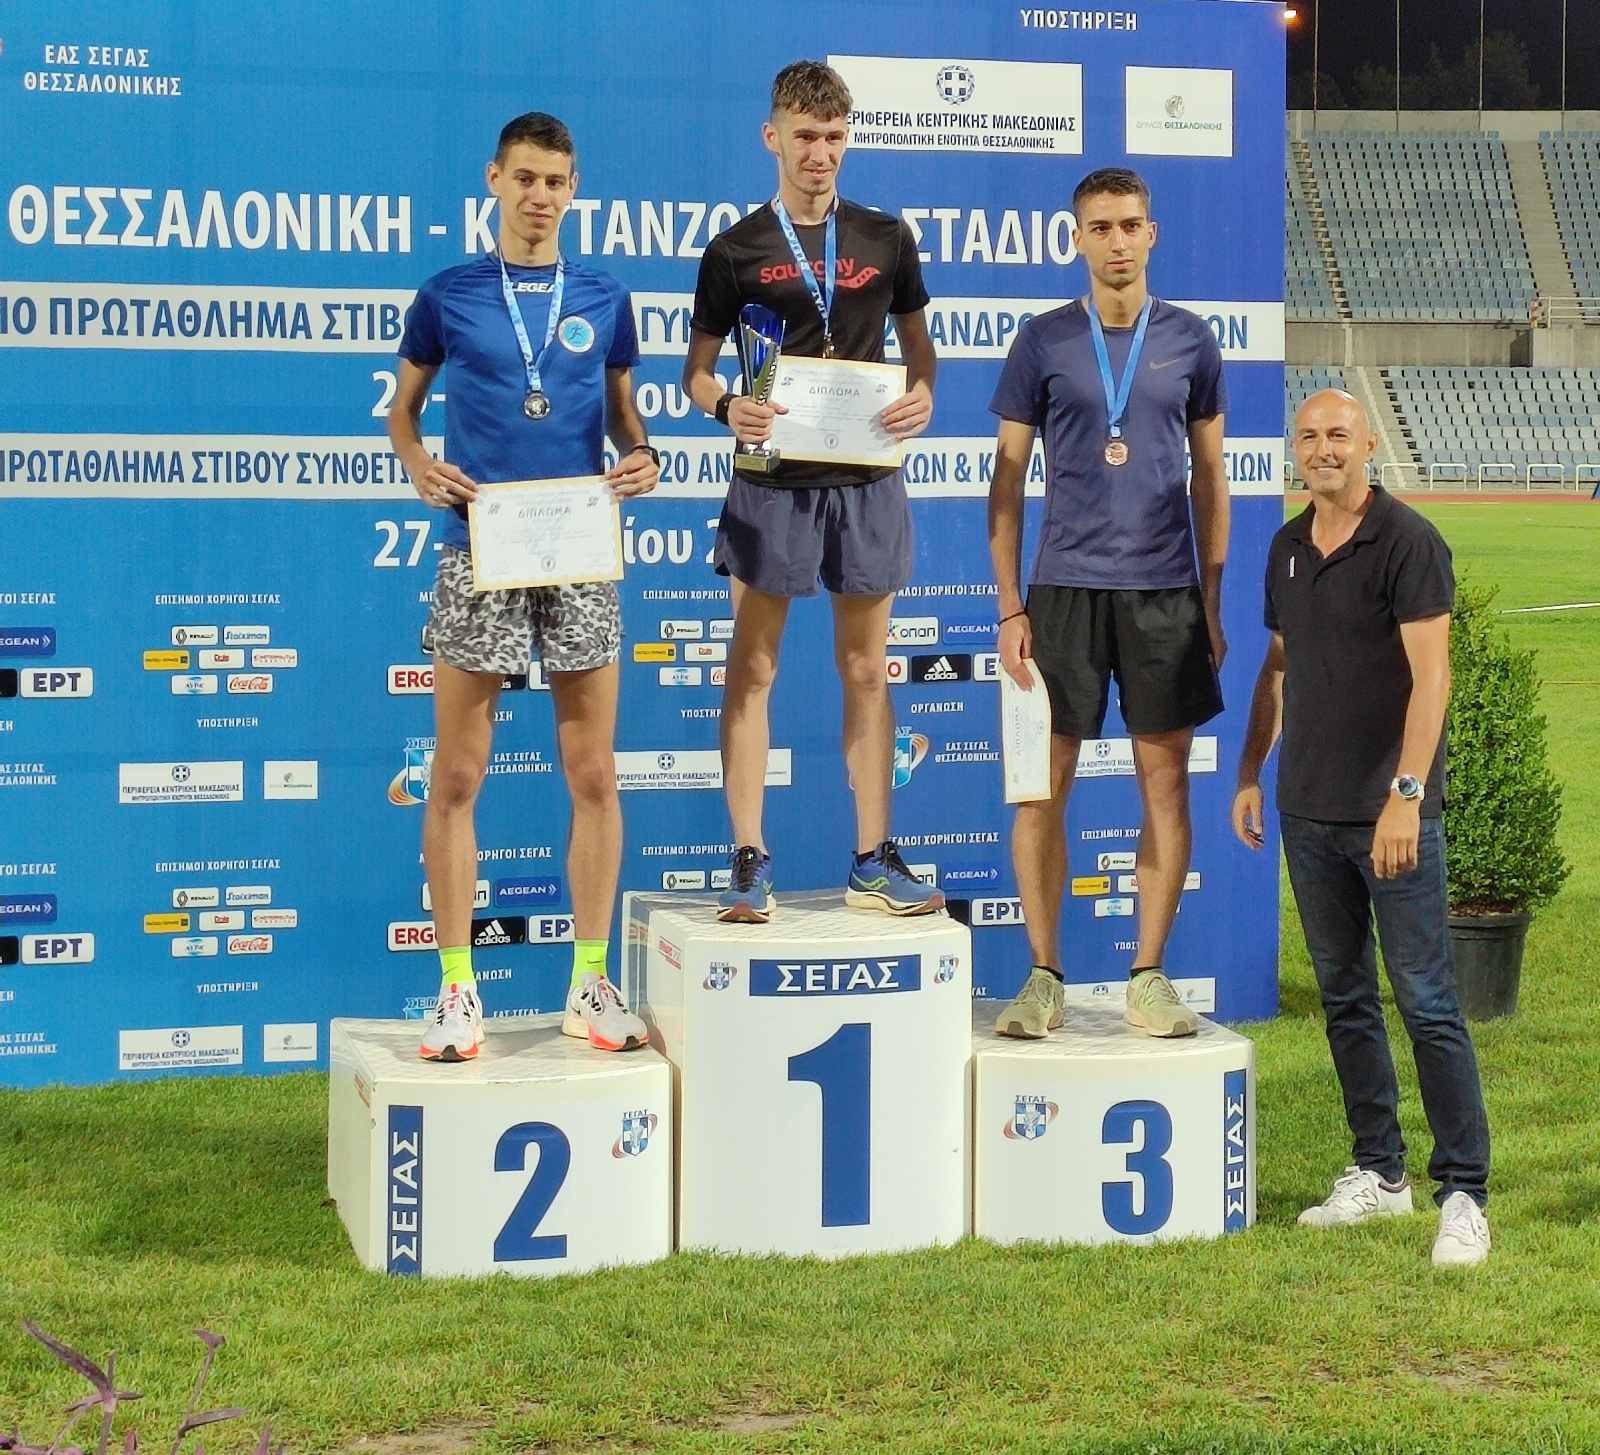 ΓΑΣ : Τεράστια επιτυχία για τον αγρινιώτικο στίβο - πρωταθλητής Ελλάδας ο Κώστας Σταμούλης